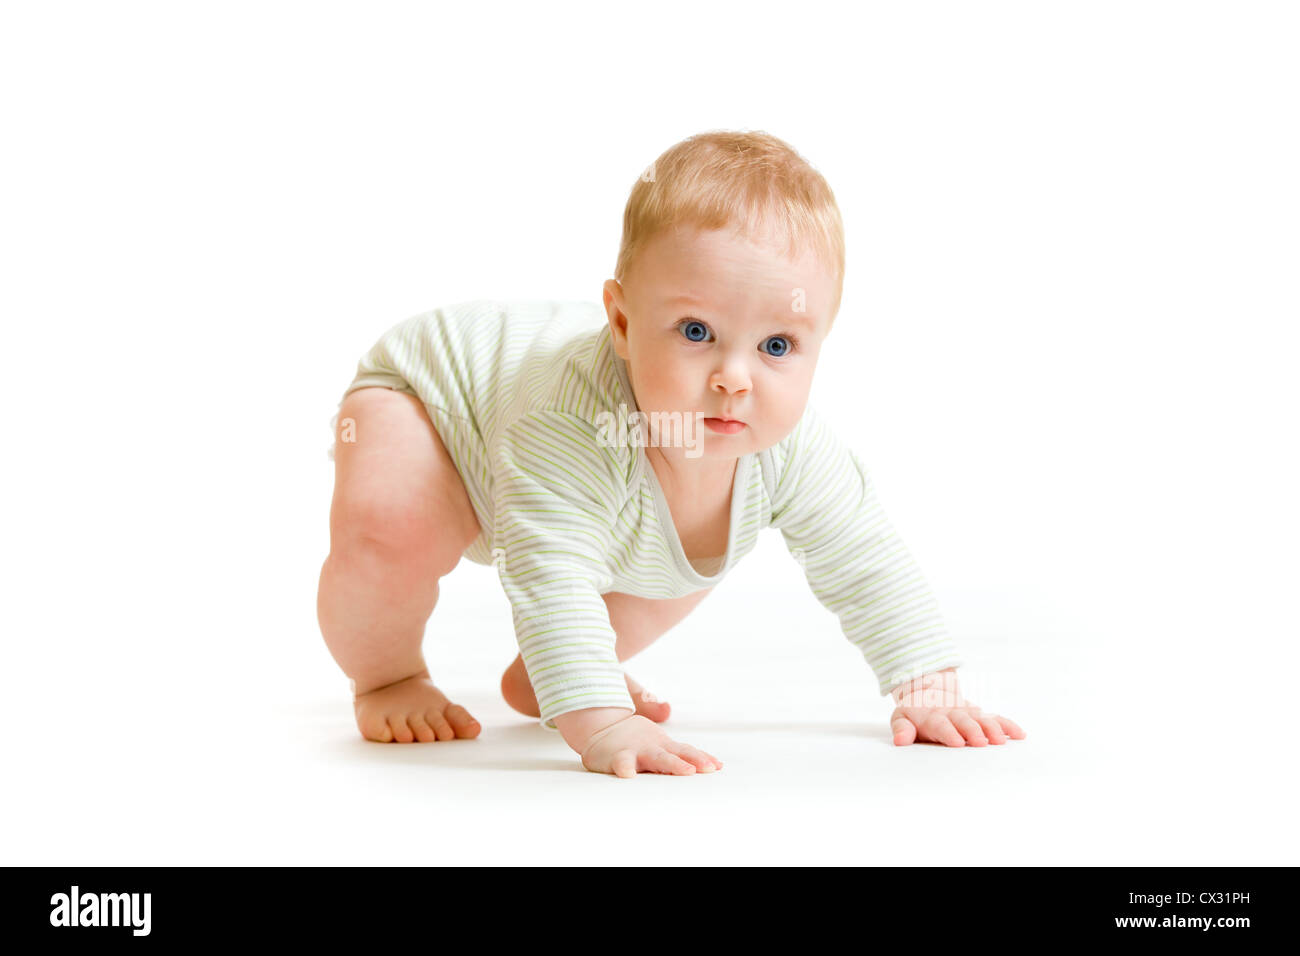 Baby boy toddler isolato cercando di alzarsi in piedi Foto Stock